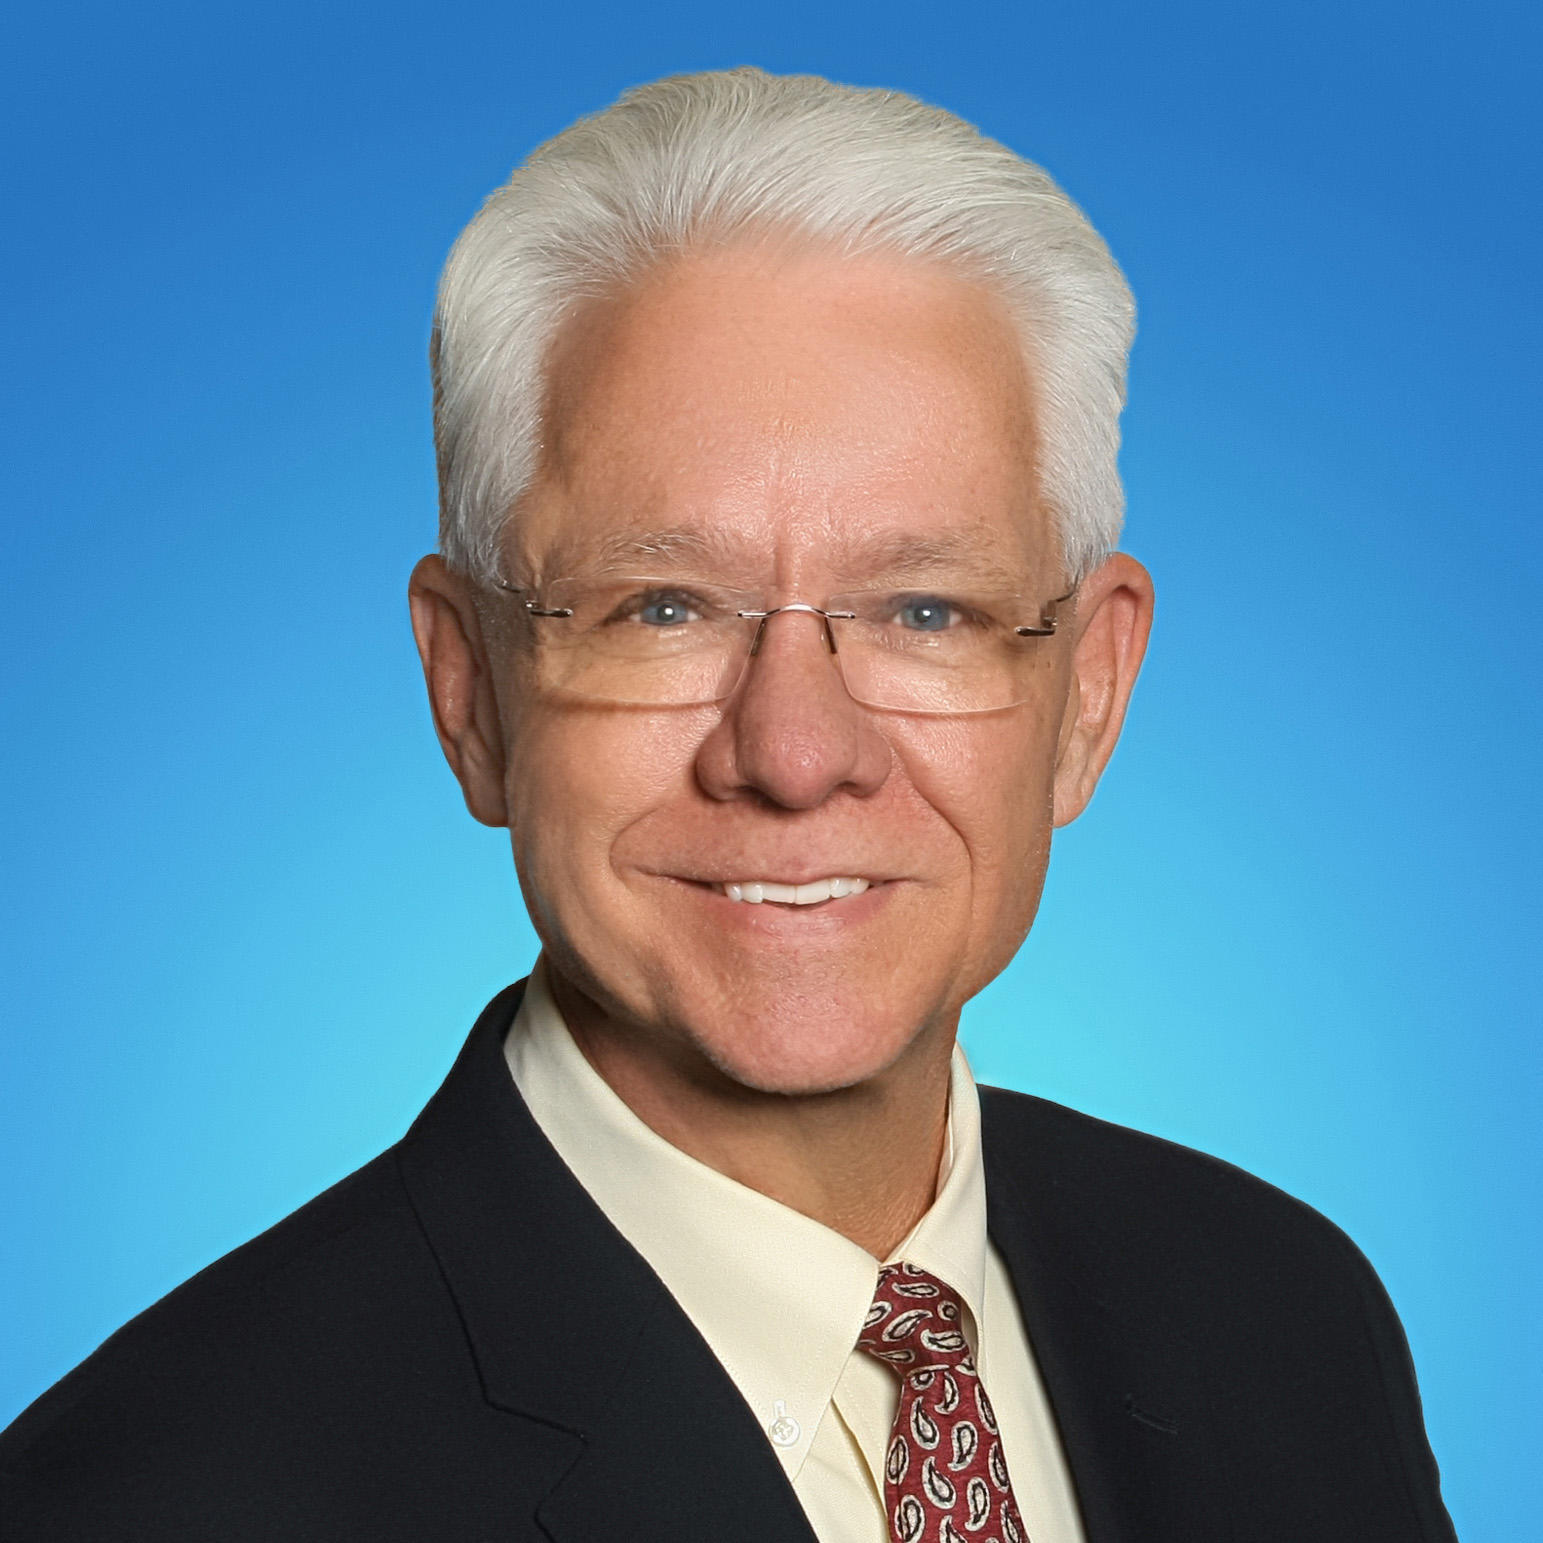 Dennis Moran: Allstate Insurance